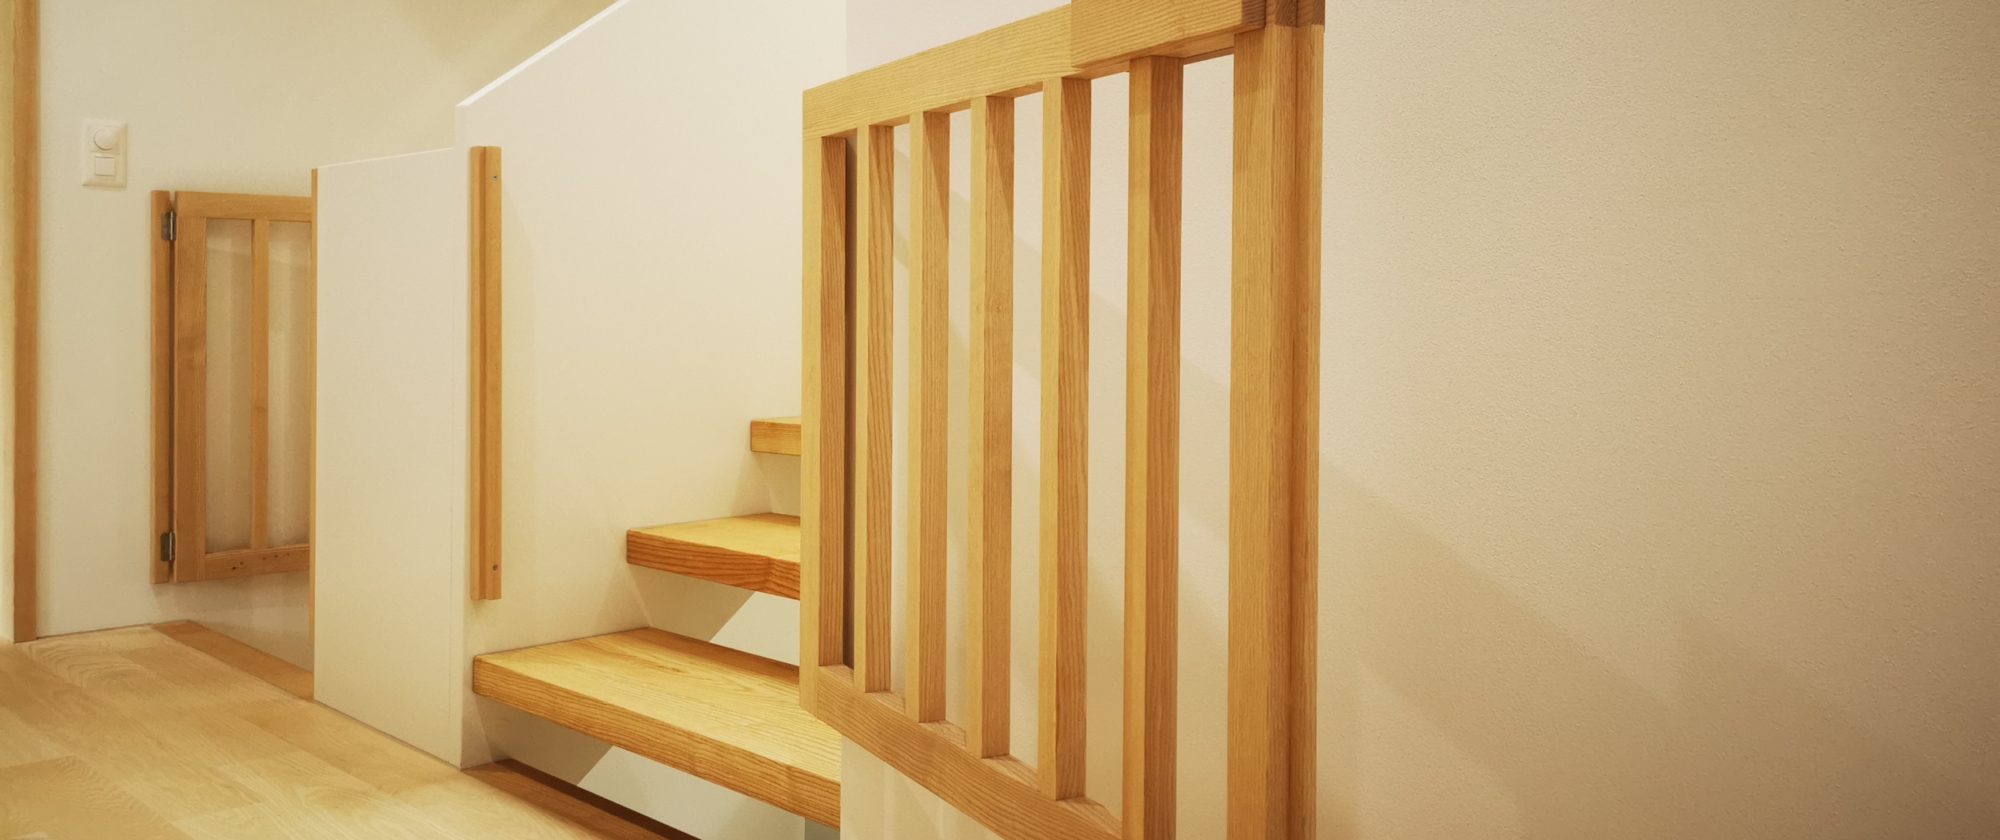 so ist die Holztreppe auch für kleine Kinder geeignet